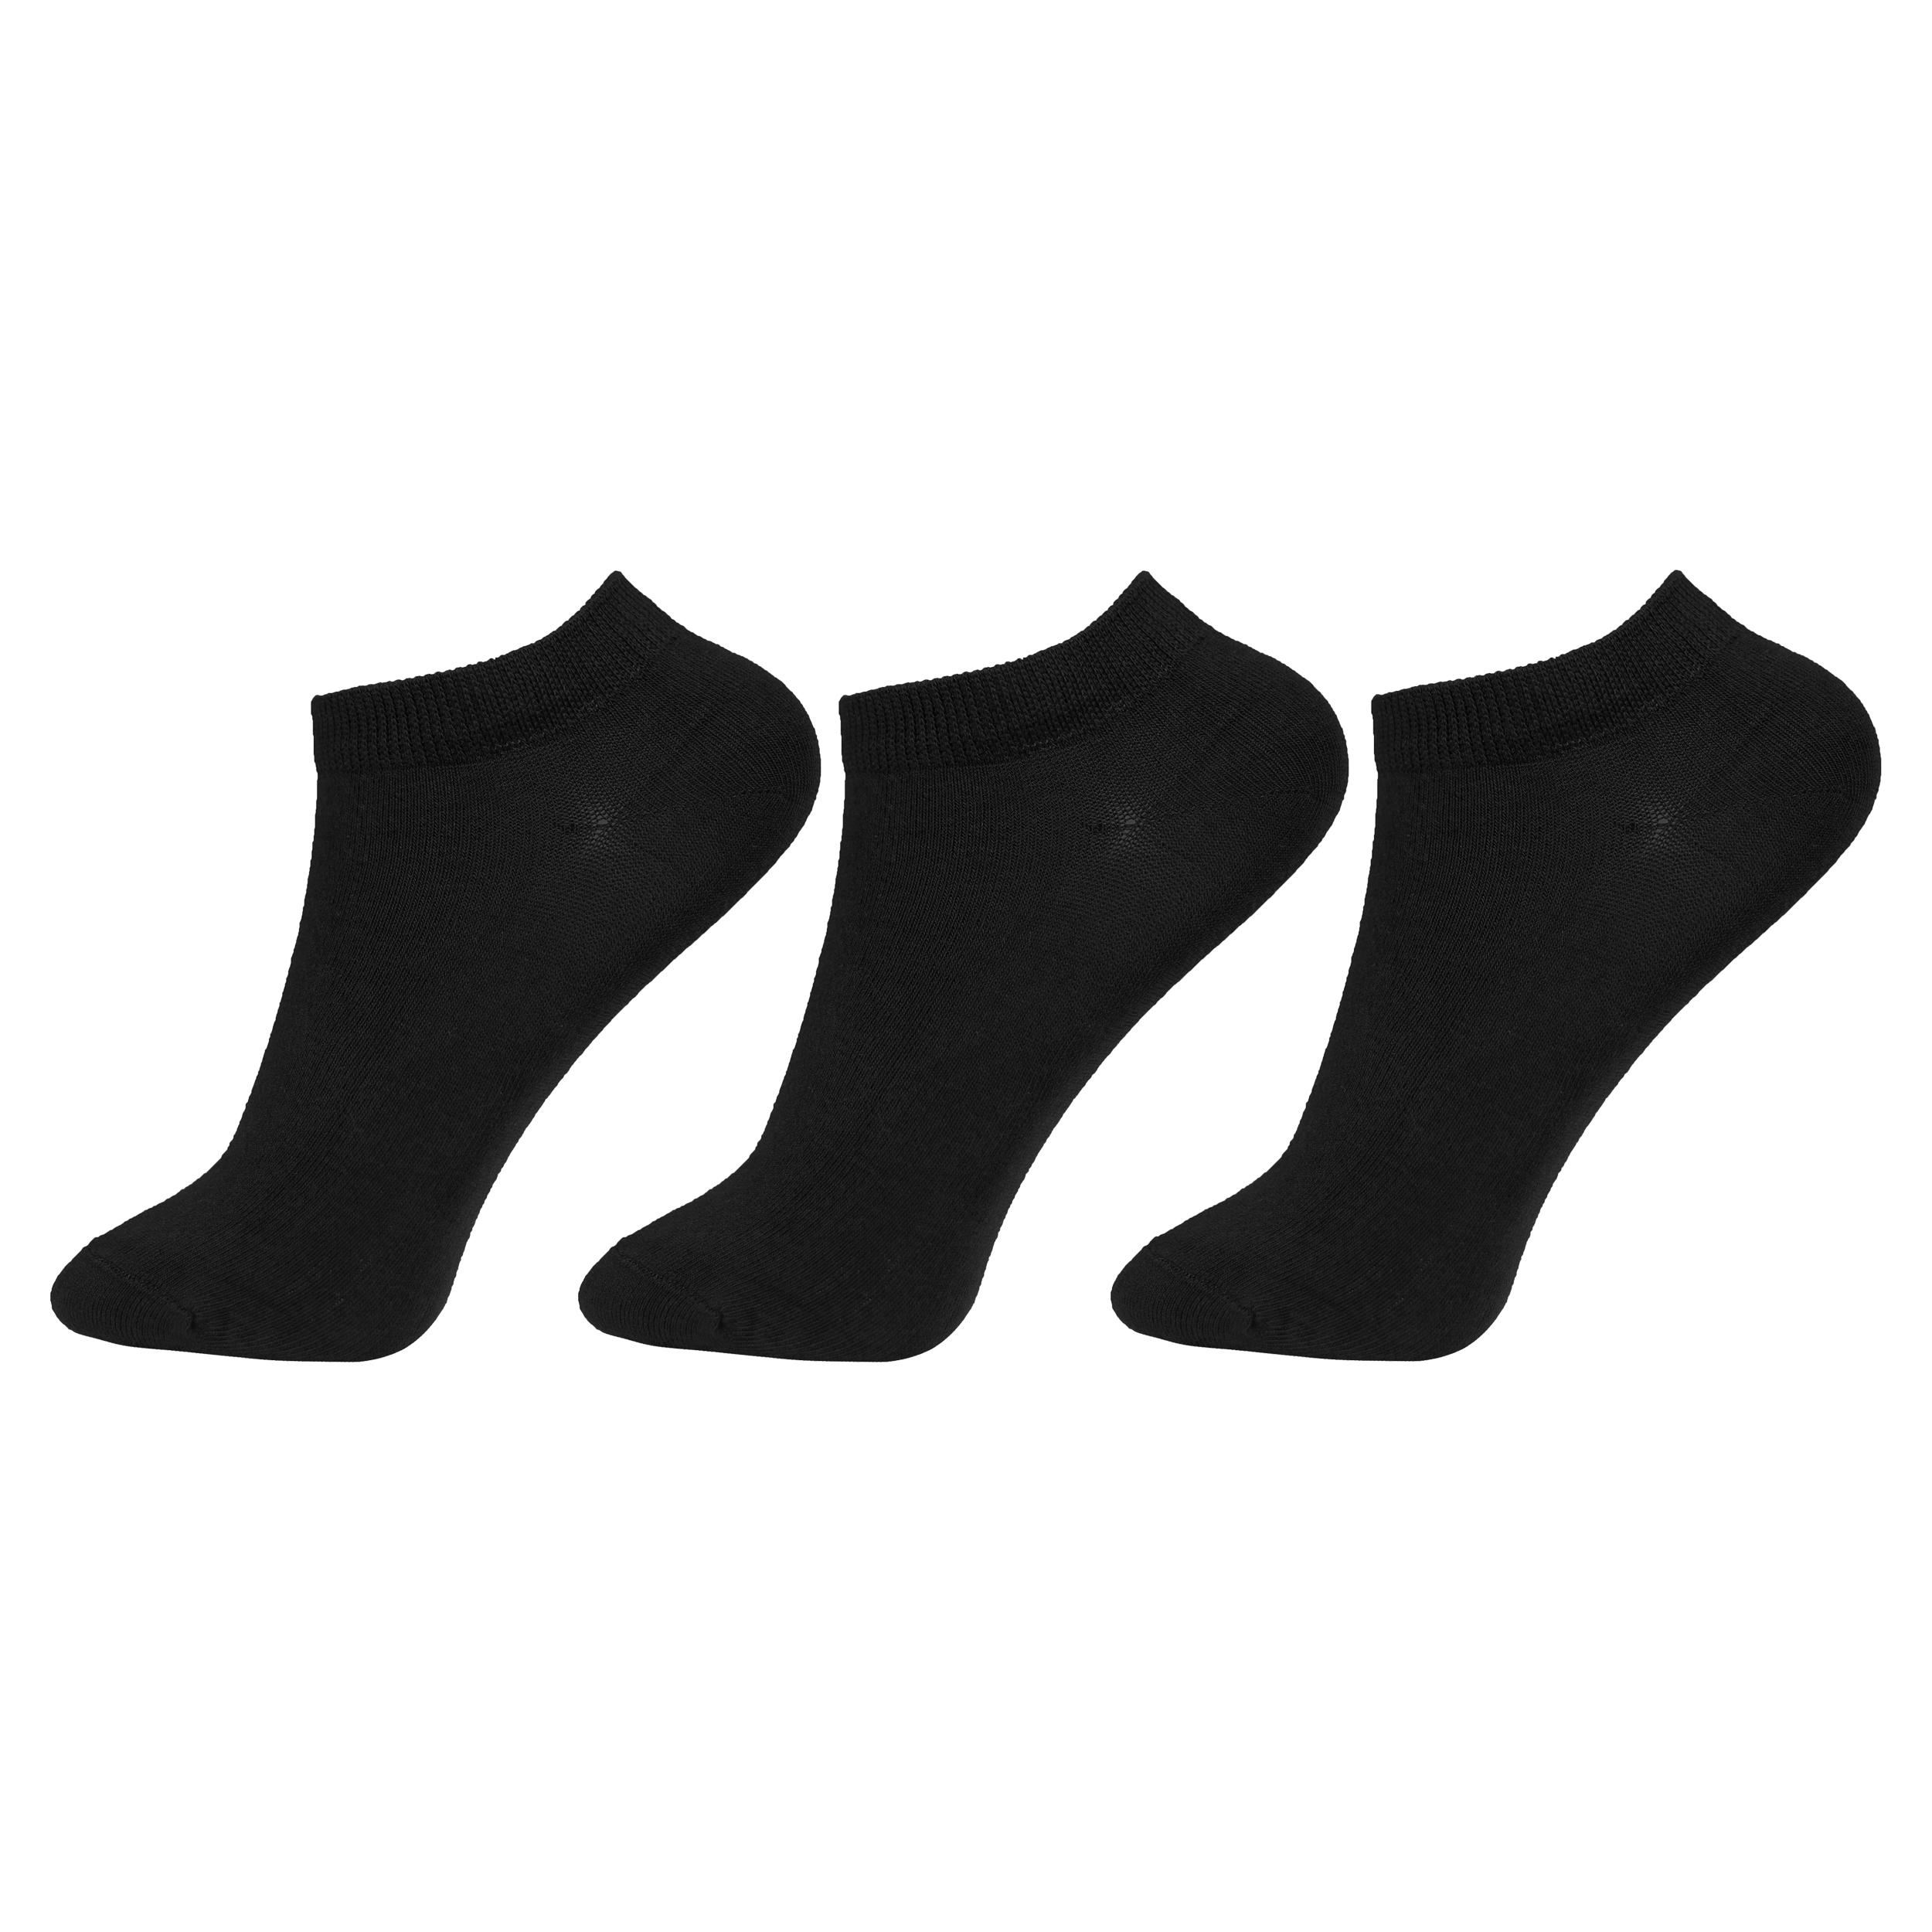 جوراب مردانه کد RG-ML 150 بسته 3 عددی -  - 1